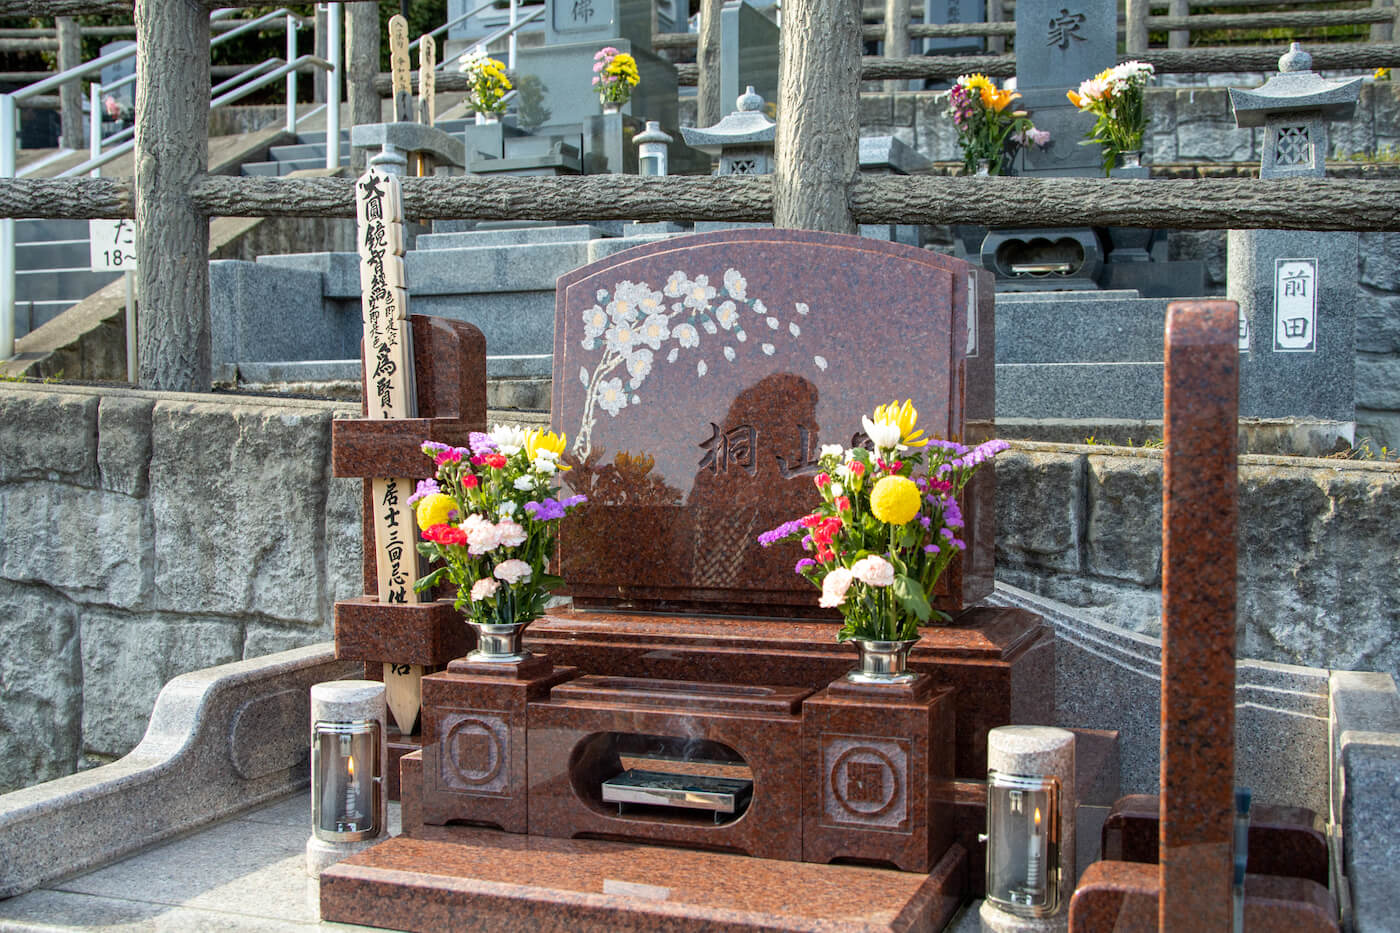 子どもたちと一緒につくりあげたお墓 これからもみんなで守っていきたいと思います 長野市のお客様 一休さんのはなおか 長野県の仏壇 墓石 墓地霊園の専門店